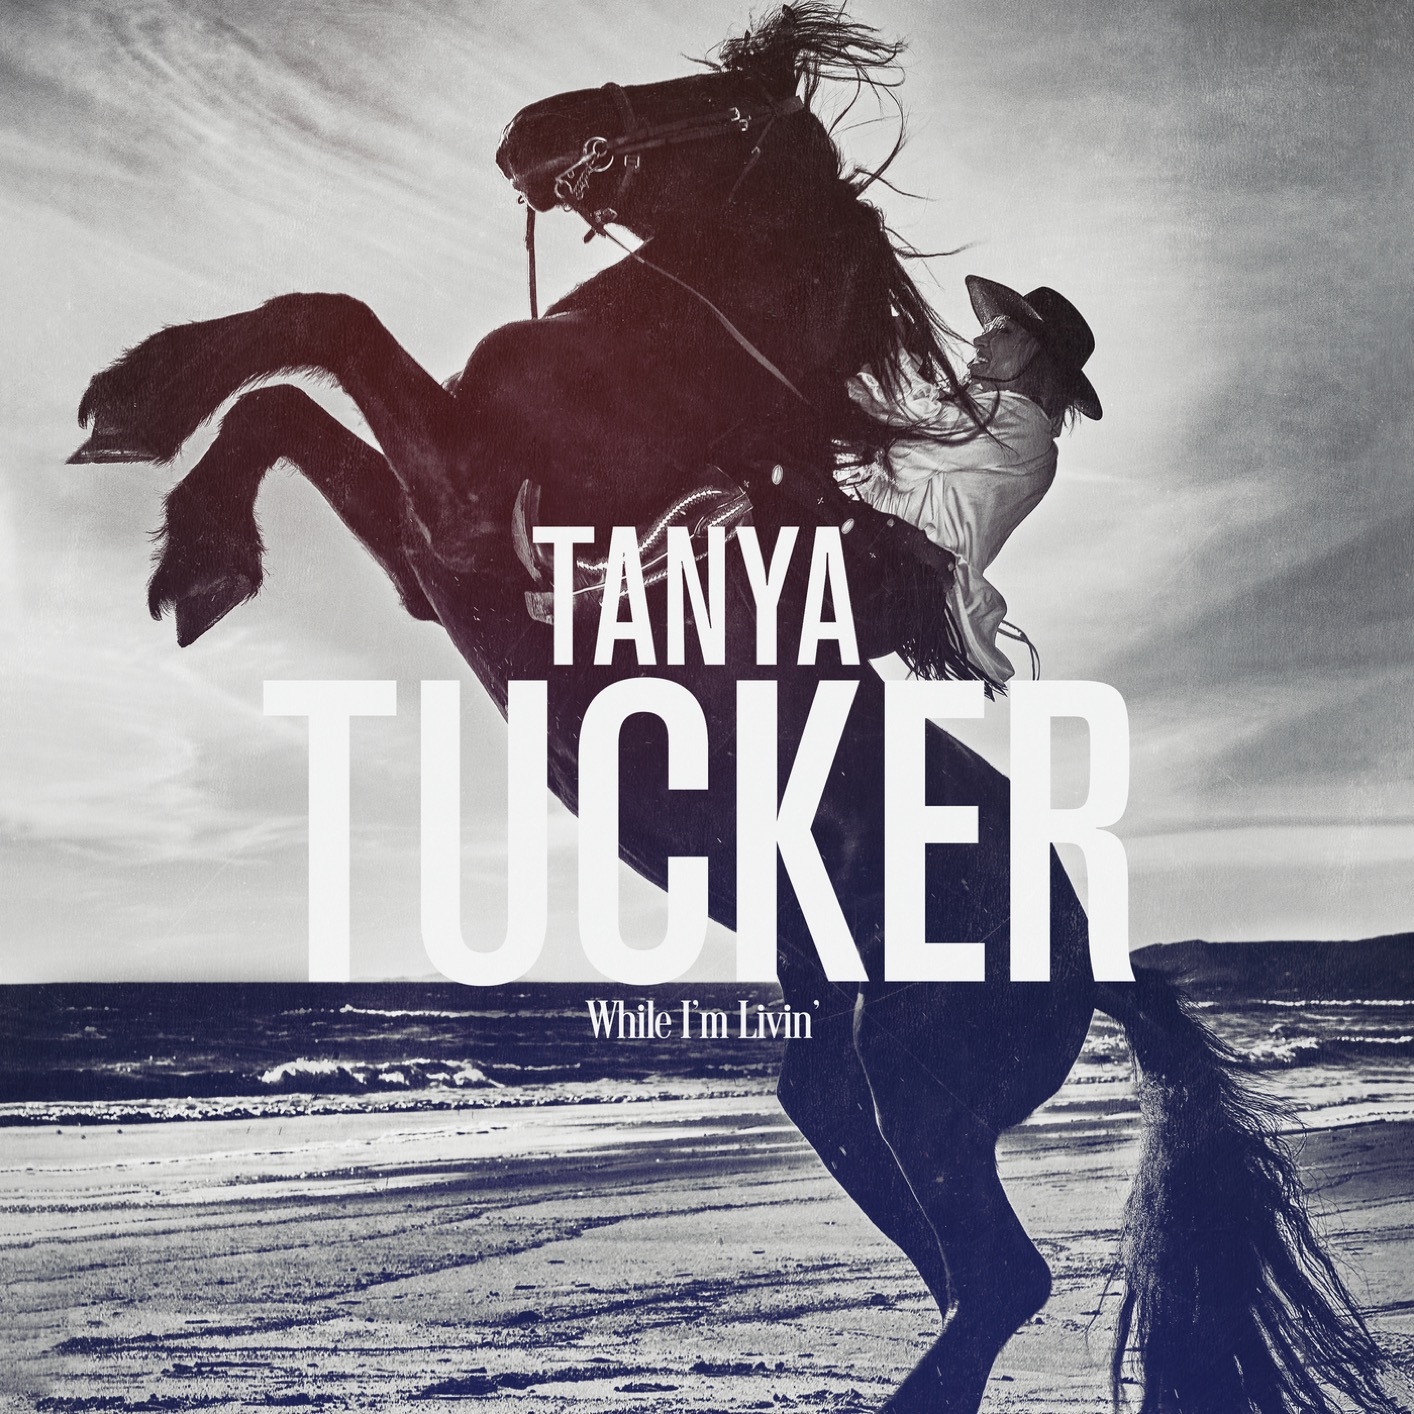 Tanya Tucker - While I’m Livin’ (2019) [FLAC 24bit/96kHz]